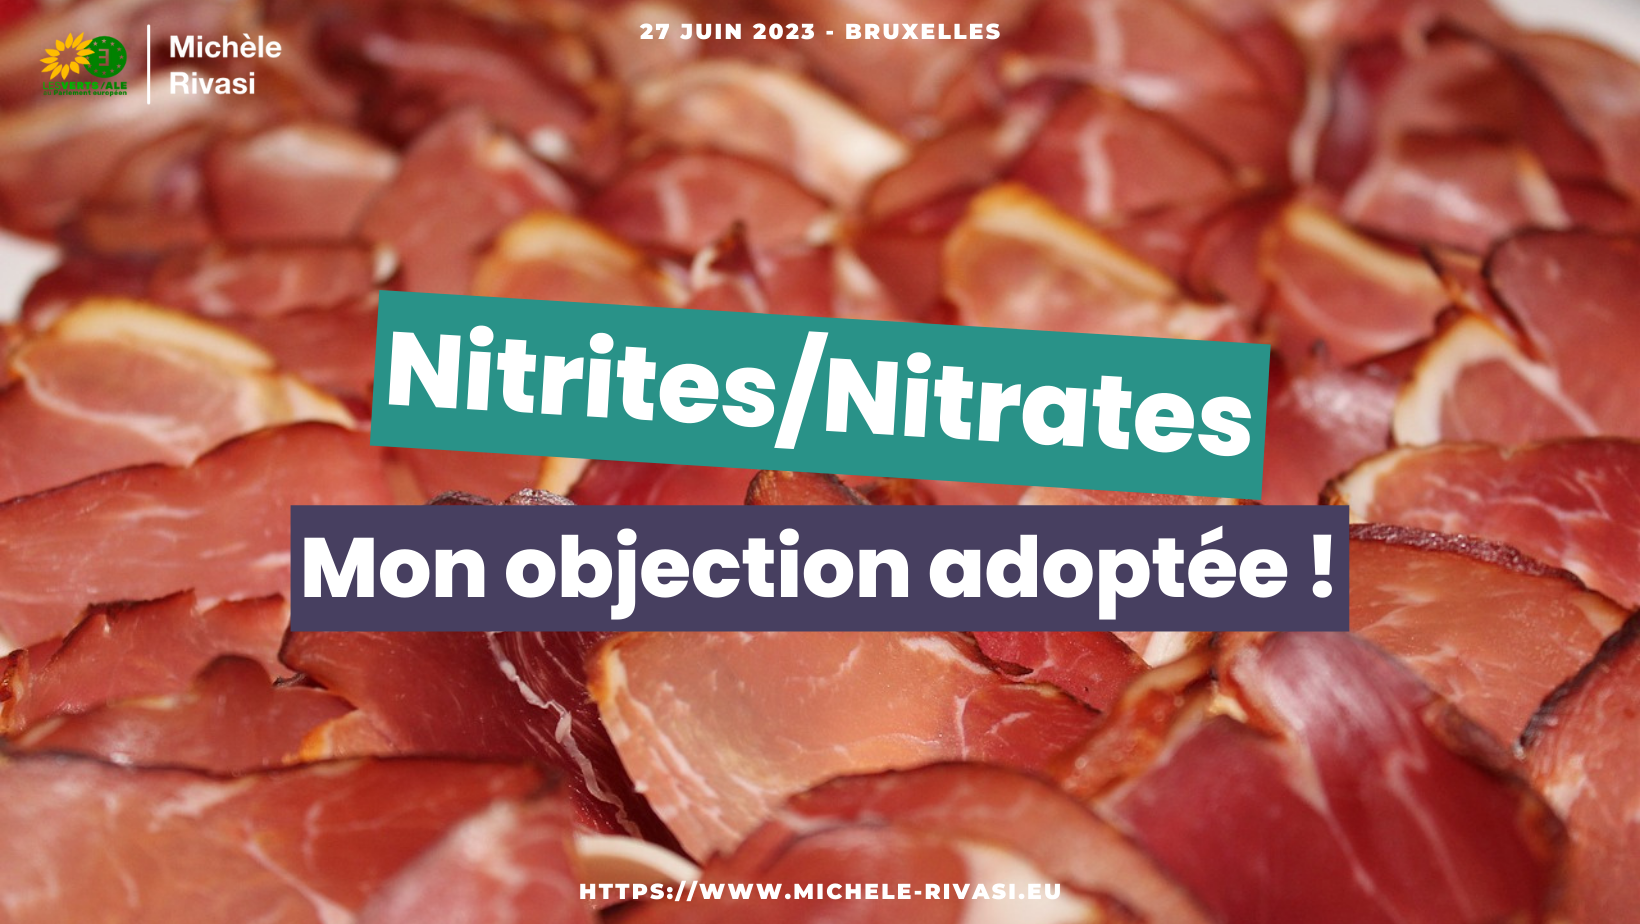 Les nitrites présents dans les charcuteries favorisent-ils